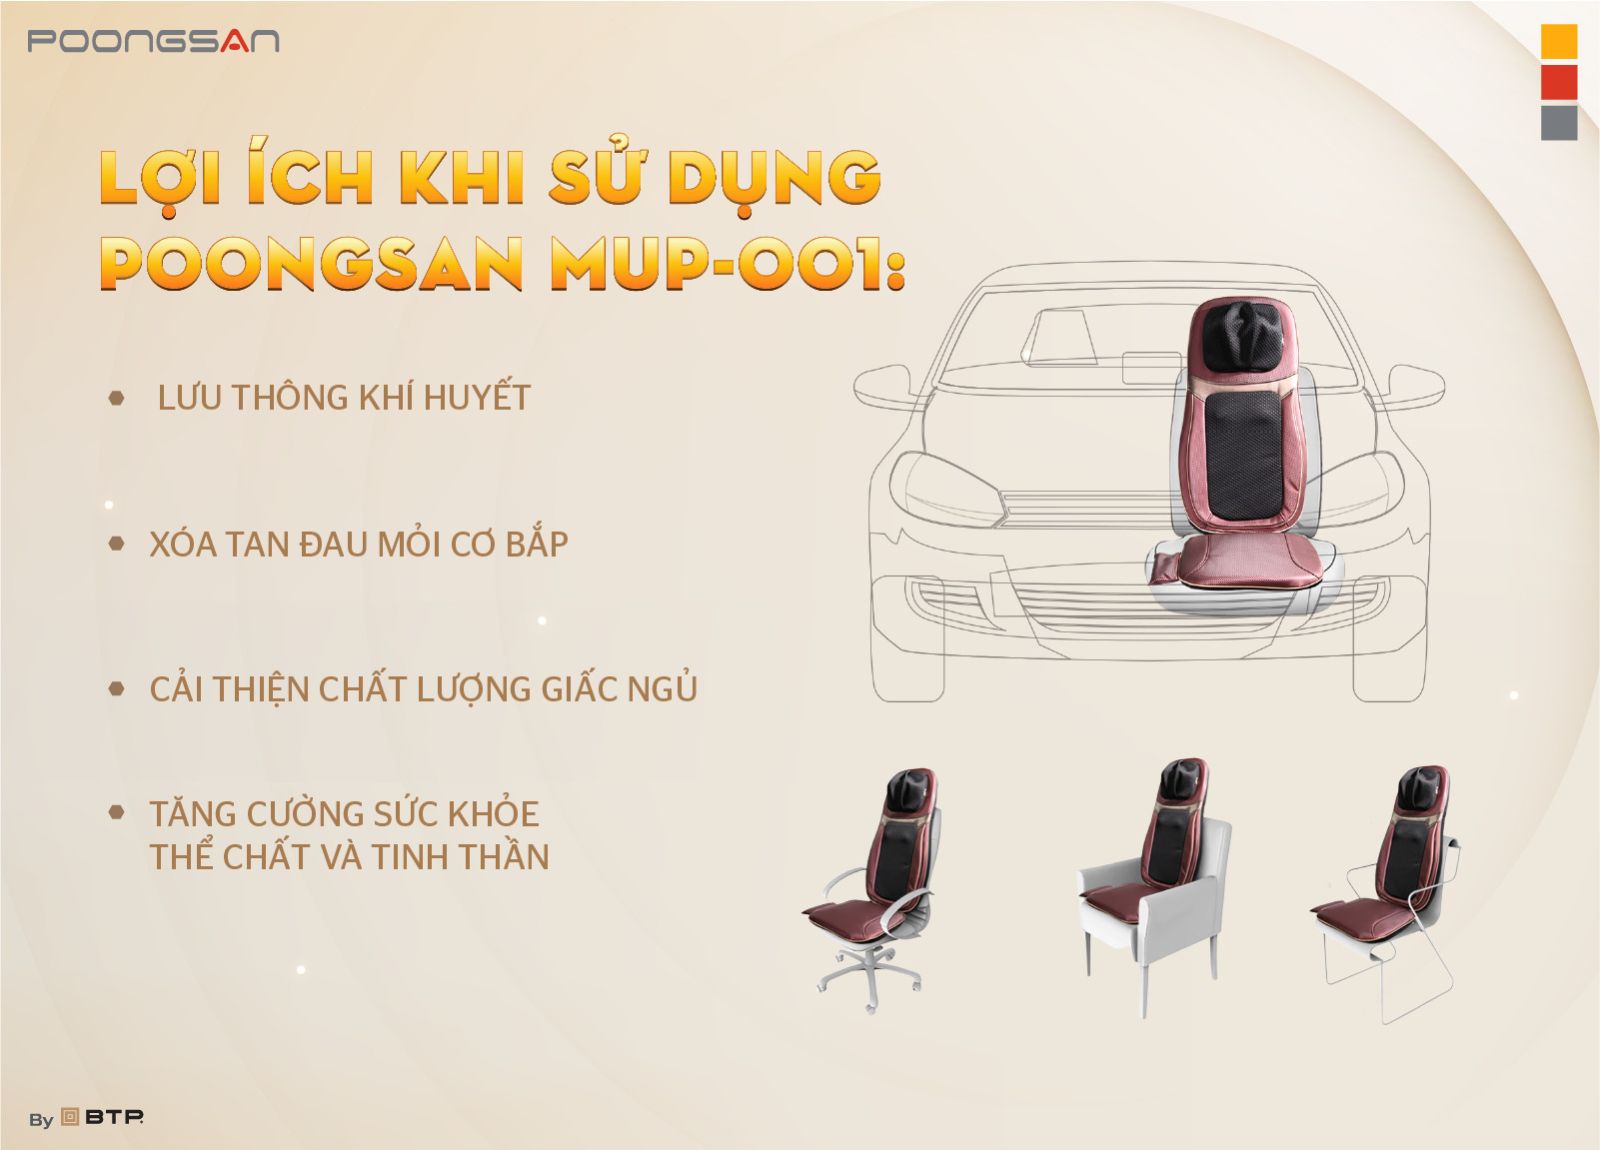 Lợi ích khi sử dụng Poongsan MUP-001